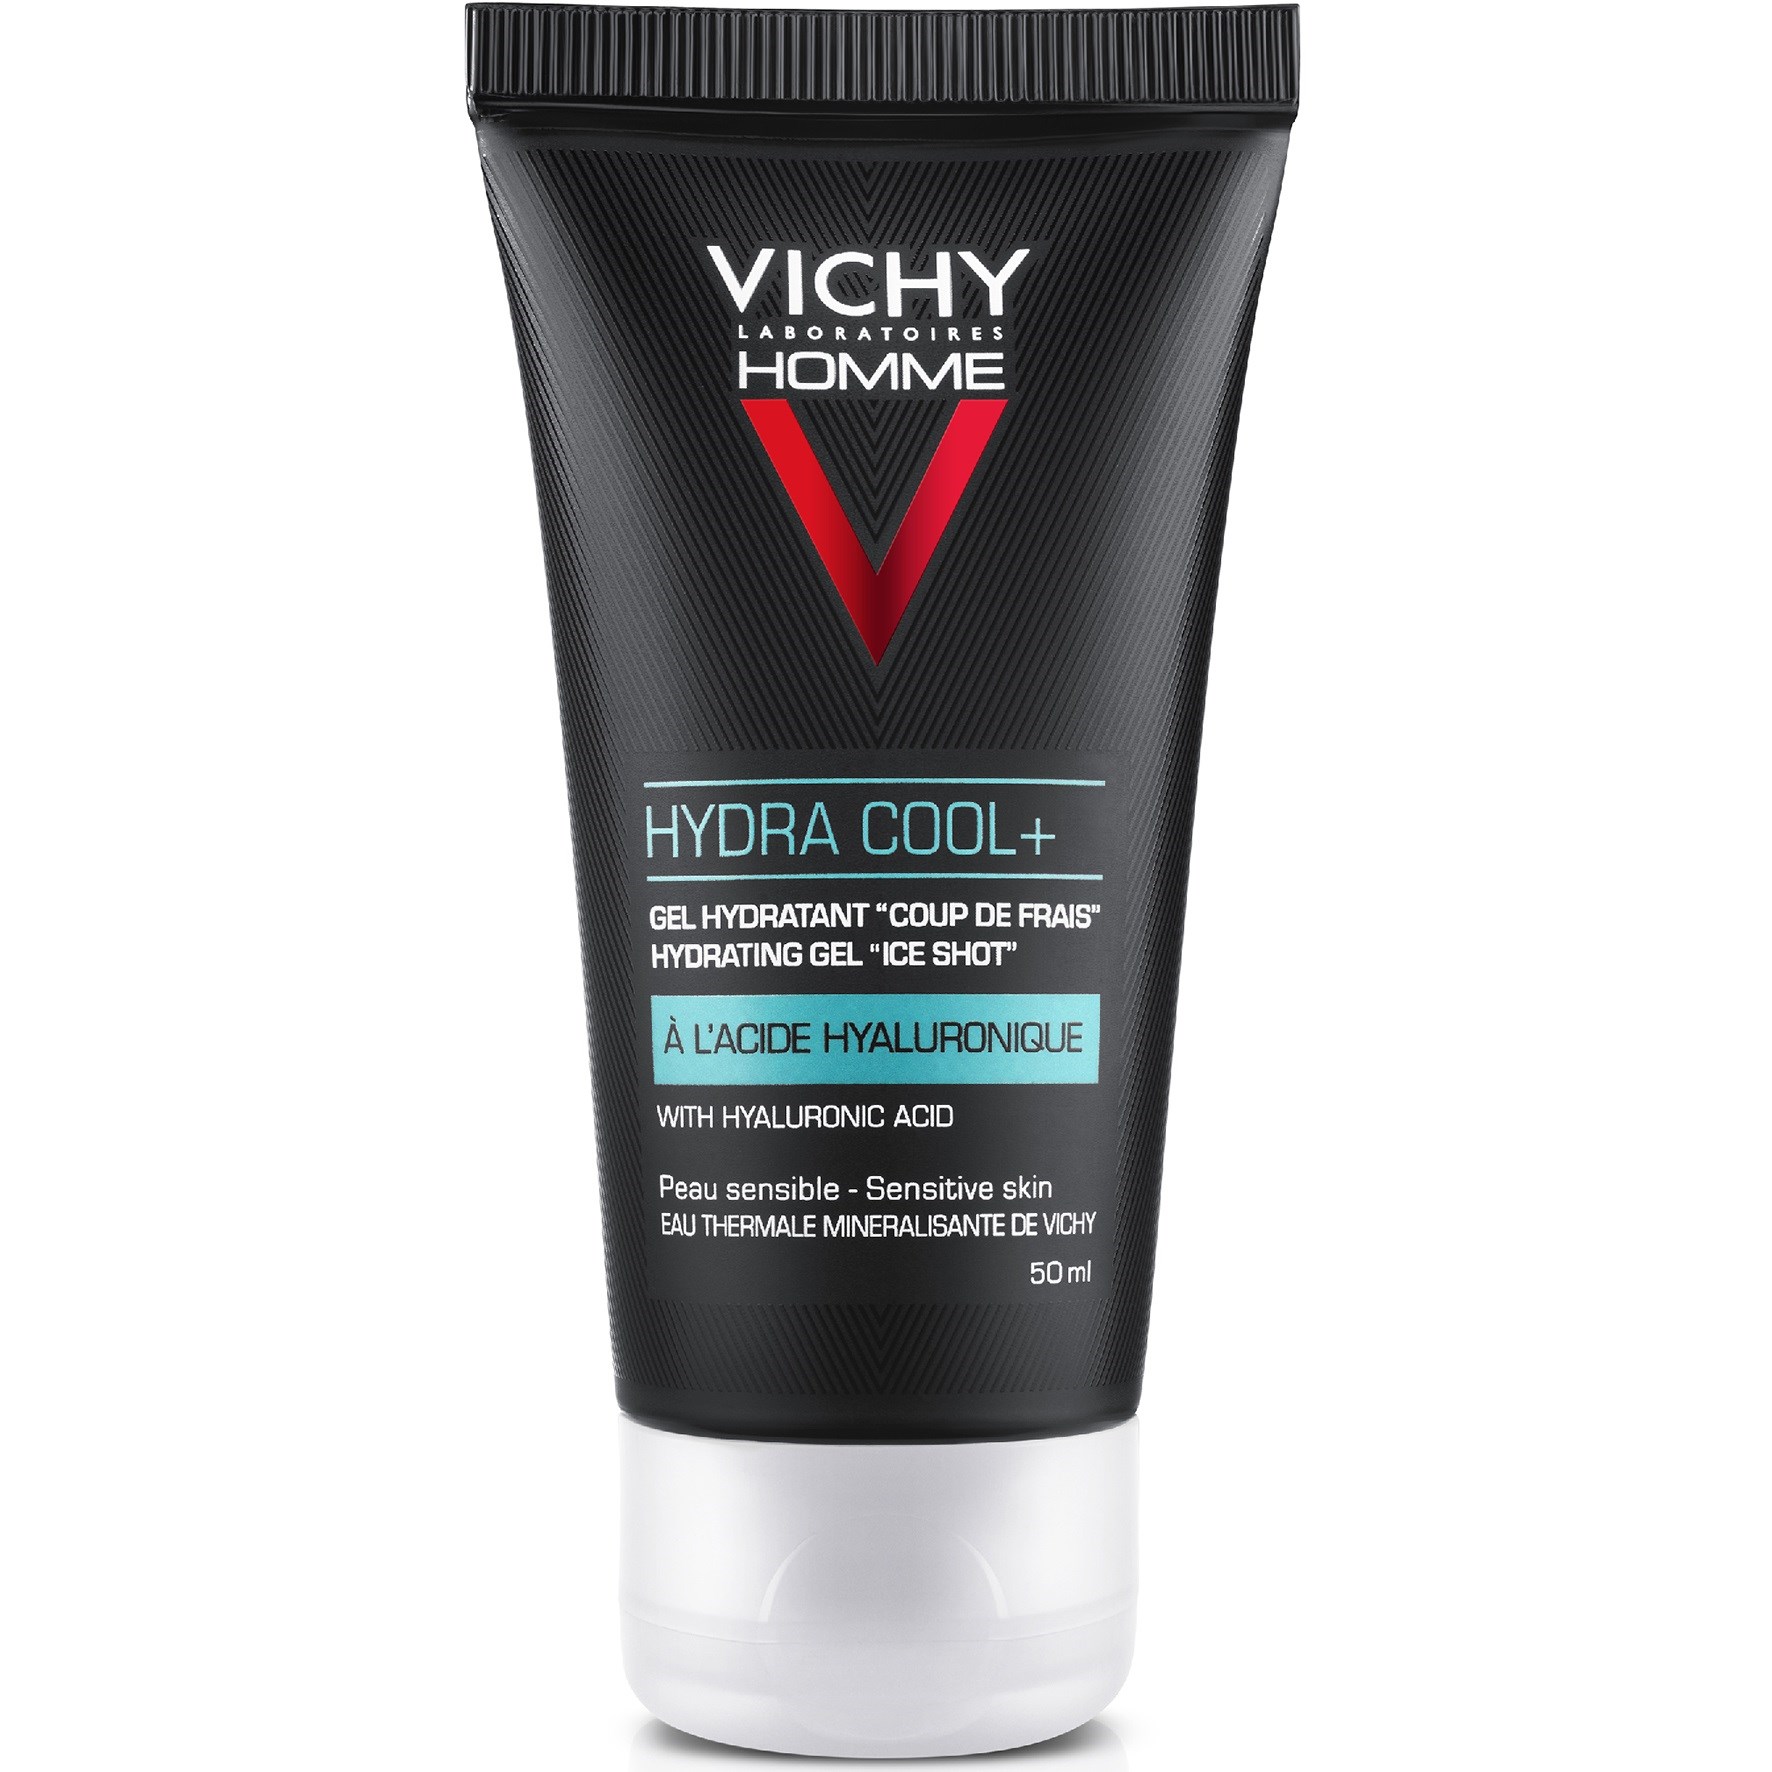 VICHY Homme Hydra Cool+ Hydrating gel 50 ml